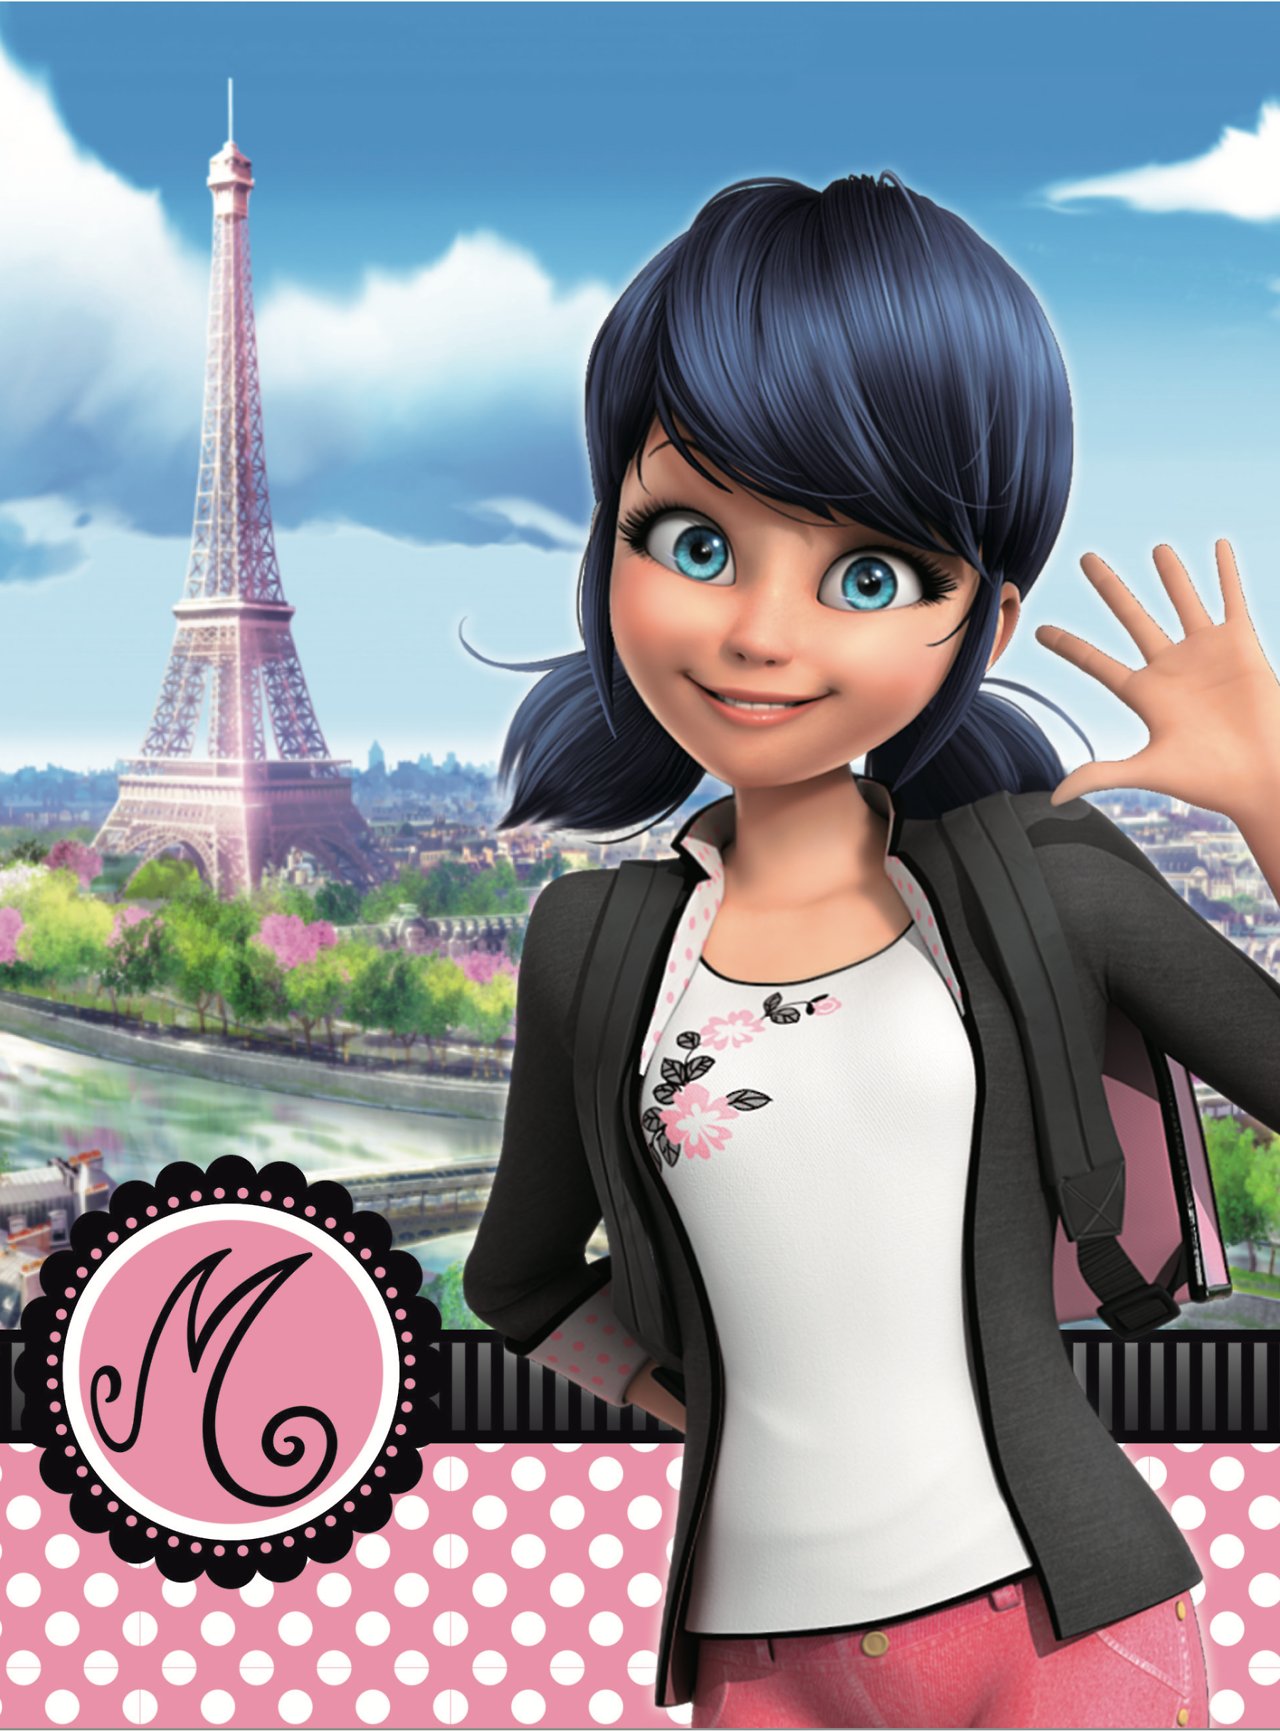 Entjej I En Rosa Prickig Klänning Och En Eiffeltornet